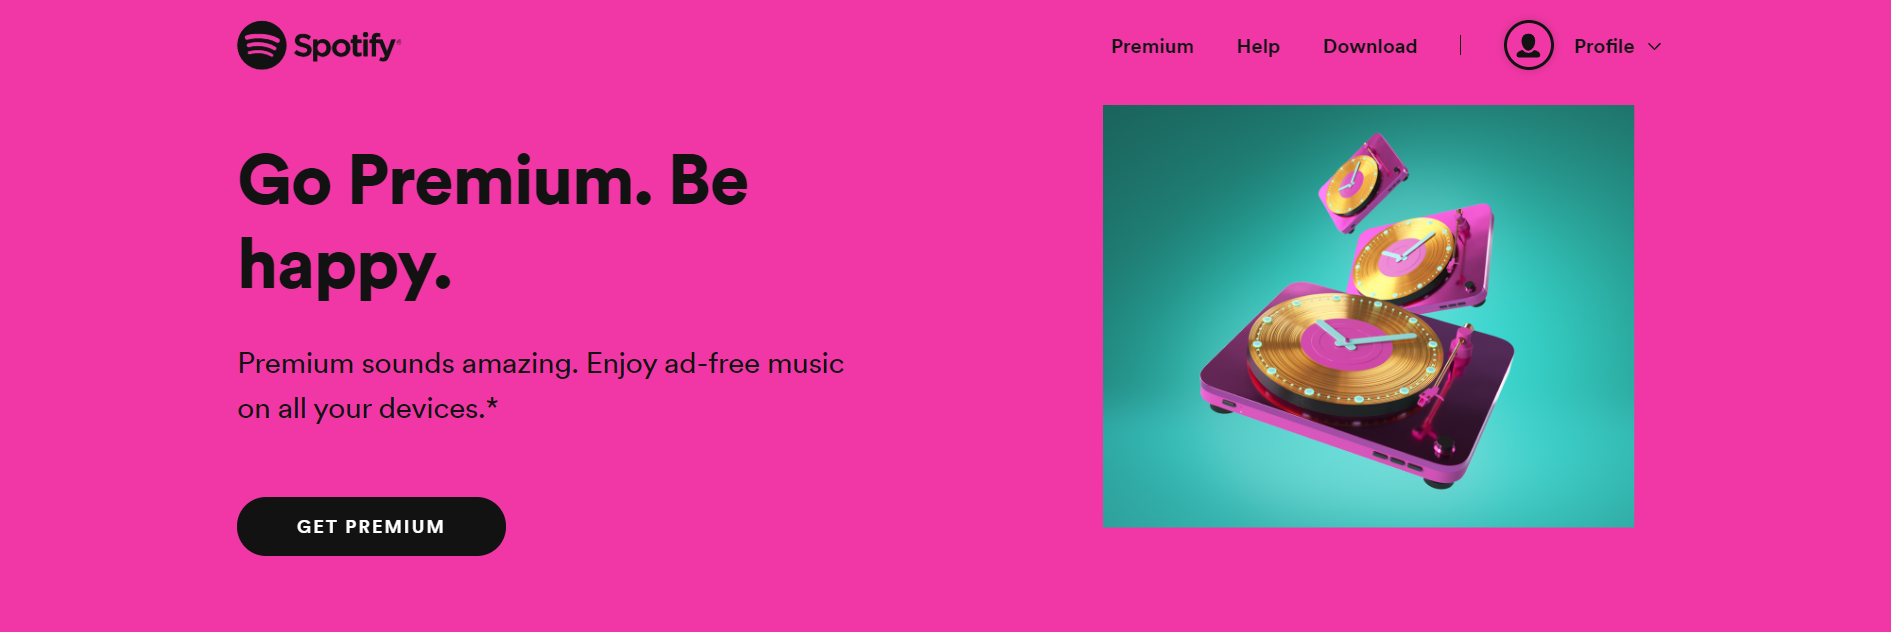 Spotify's premium page